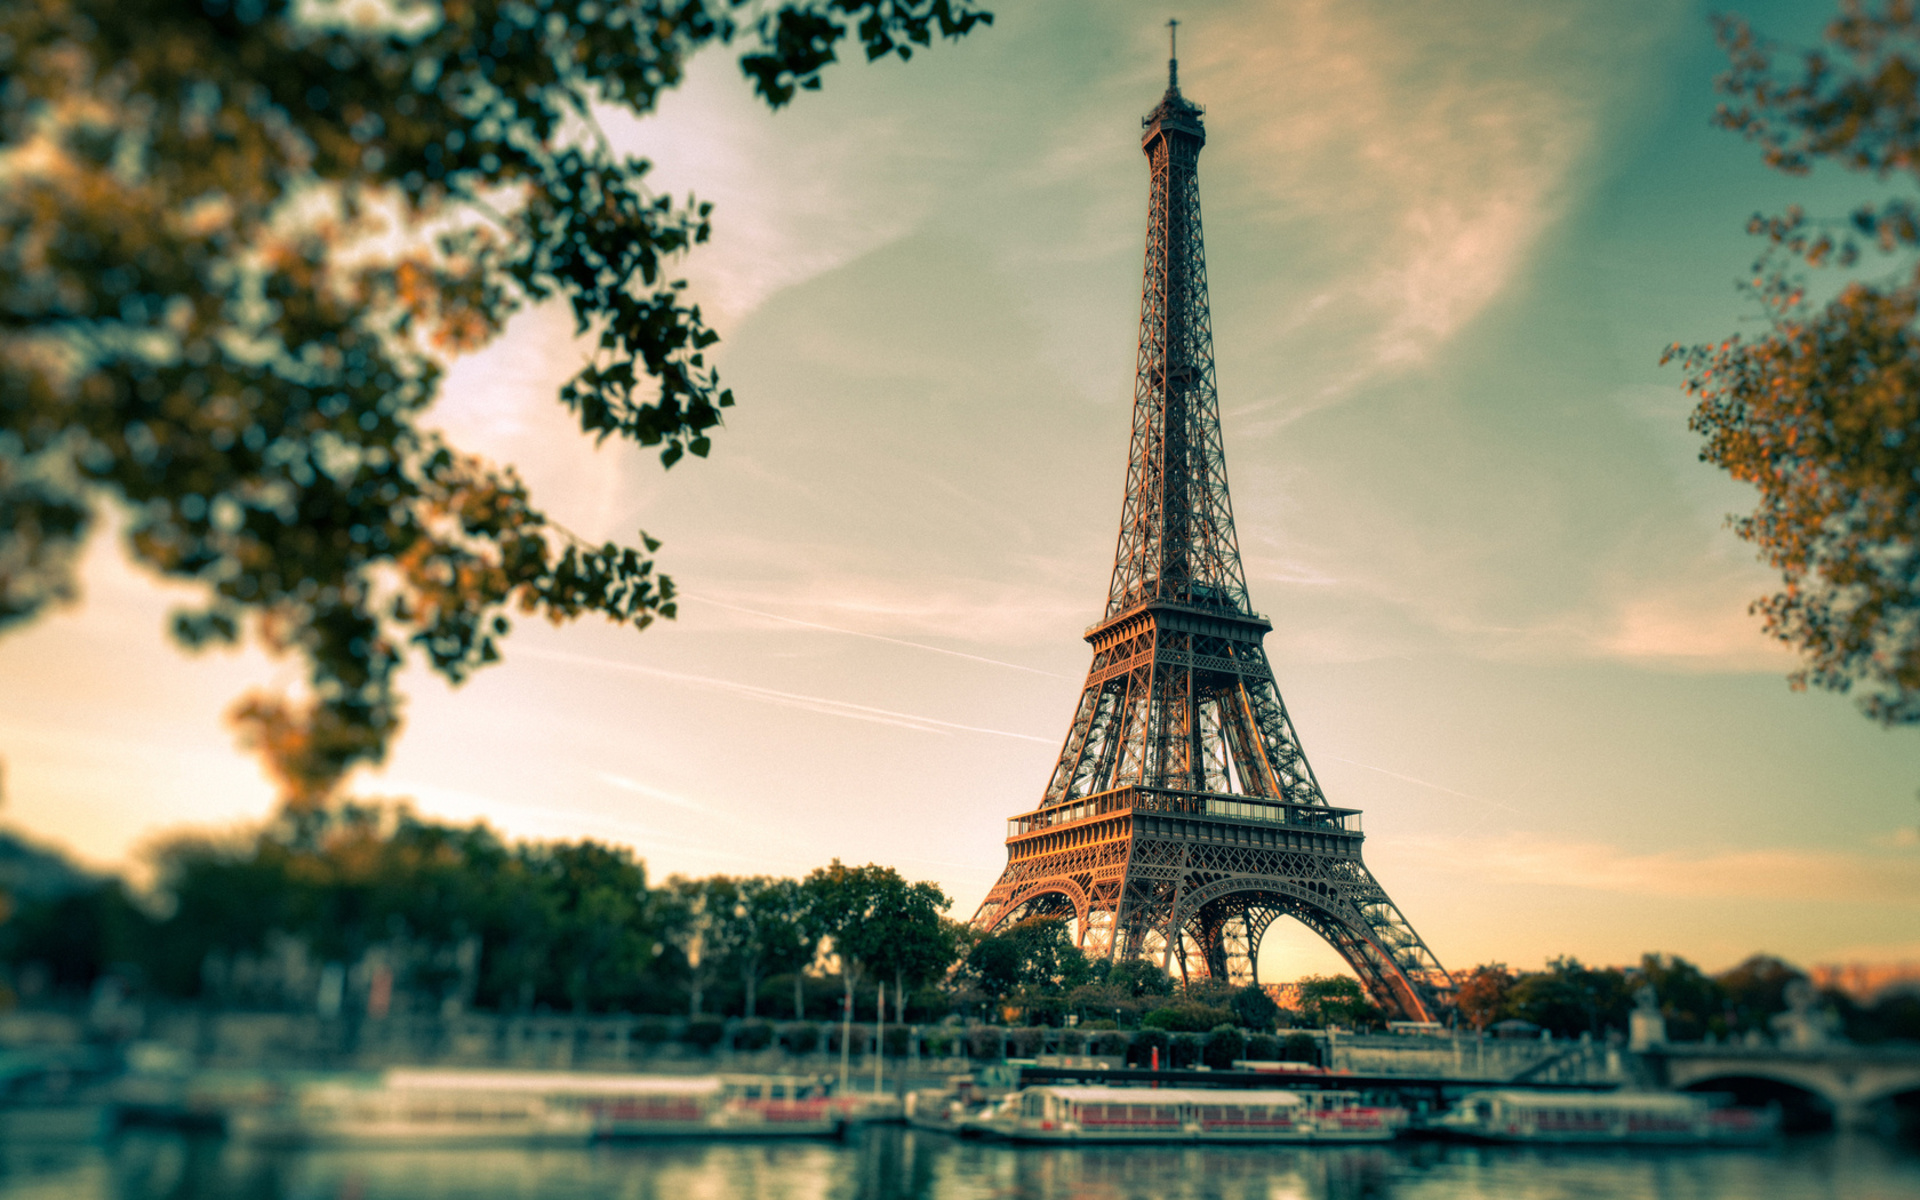 Hãy cùng khám phá đêm Paris thật tuyệt vời và lãng mạn, thưởng thức cảnh quan hoàng thành và Tháp Eiffel lung linh ánh sáng với những bông lửa rực rỡ. Hãy đi bộ qua tuyến đường dọc sông Seine và cùng hòa mình vào giữa trung tâm người dân đông đúc, thấy mình luôn là một phần của họ.